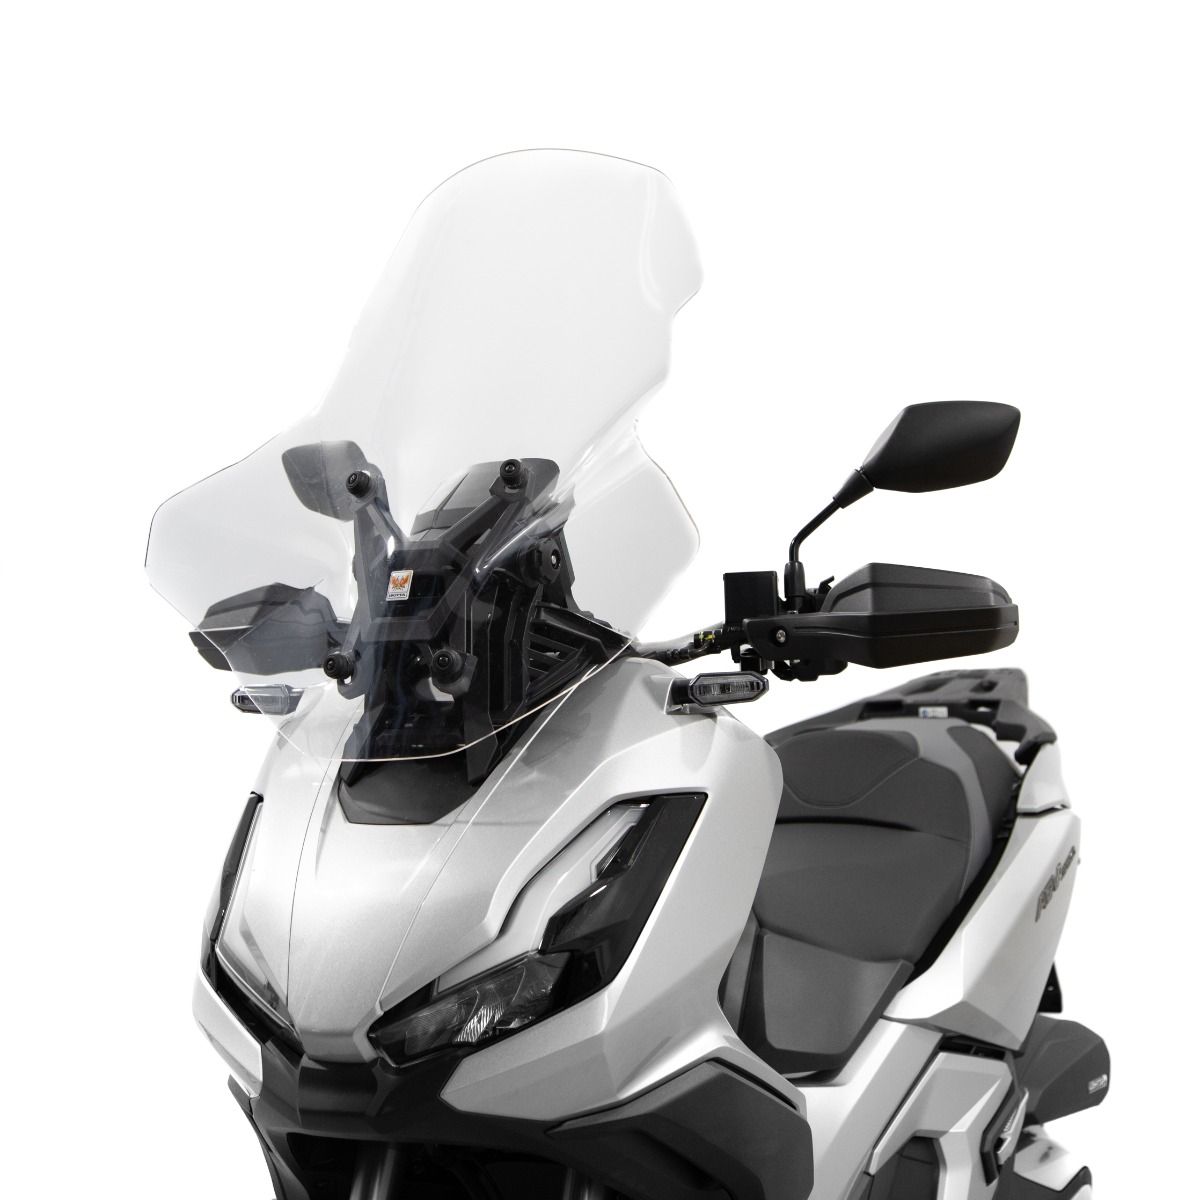 PARABREZZA MEDIA PROTEZIONE TRASPARENTE HONDA ADV 350 - Azienda leader  operante nel settore della progettazione e della realizzazione di accessori  per motocicli, scooter ed ATV